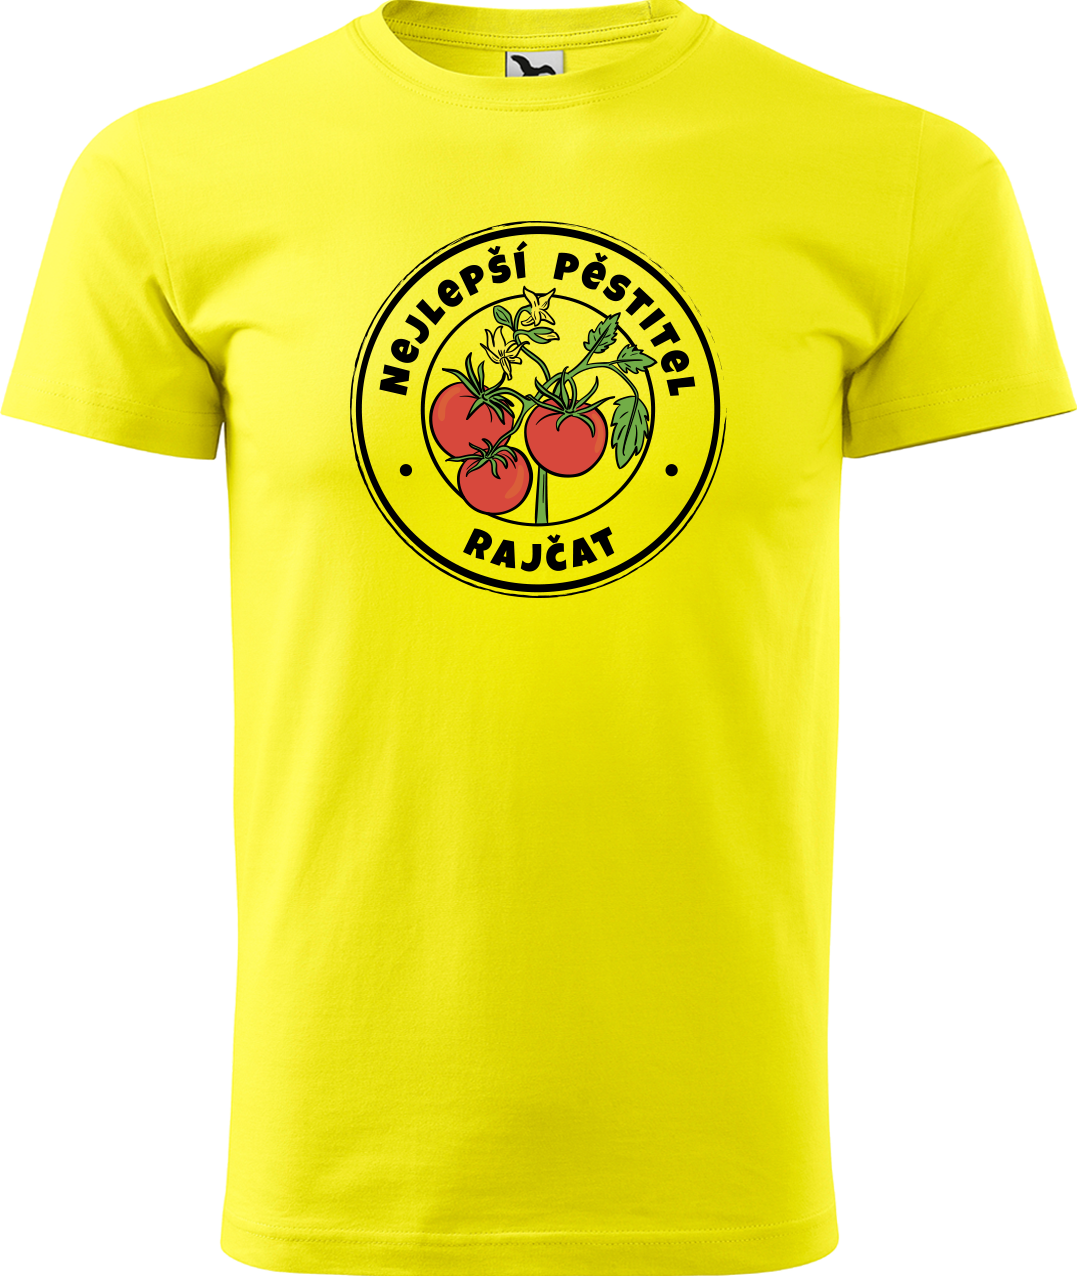 Tričko pro zahradníka - Nejlepší pěstitel rajčat Velikost: L, Barva: Žlutá (04)